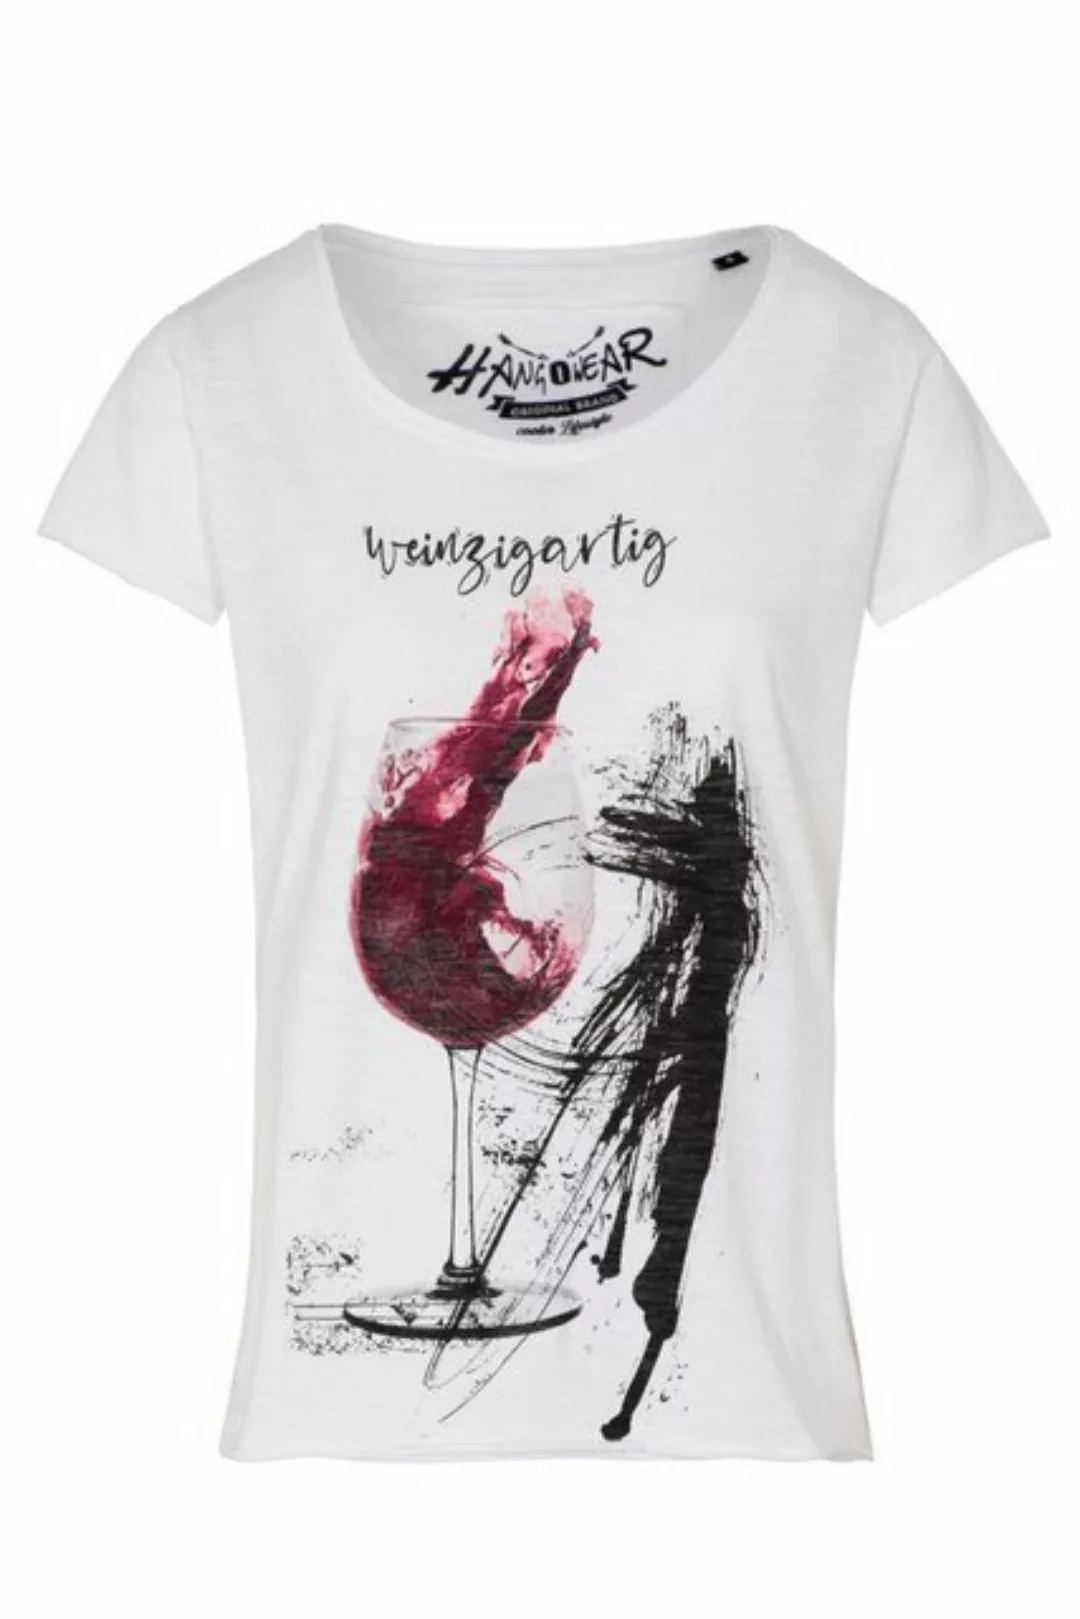 Hangowear T-Shirt Weinzigartig - 1221/71534 günstig online kaufen